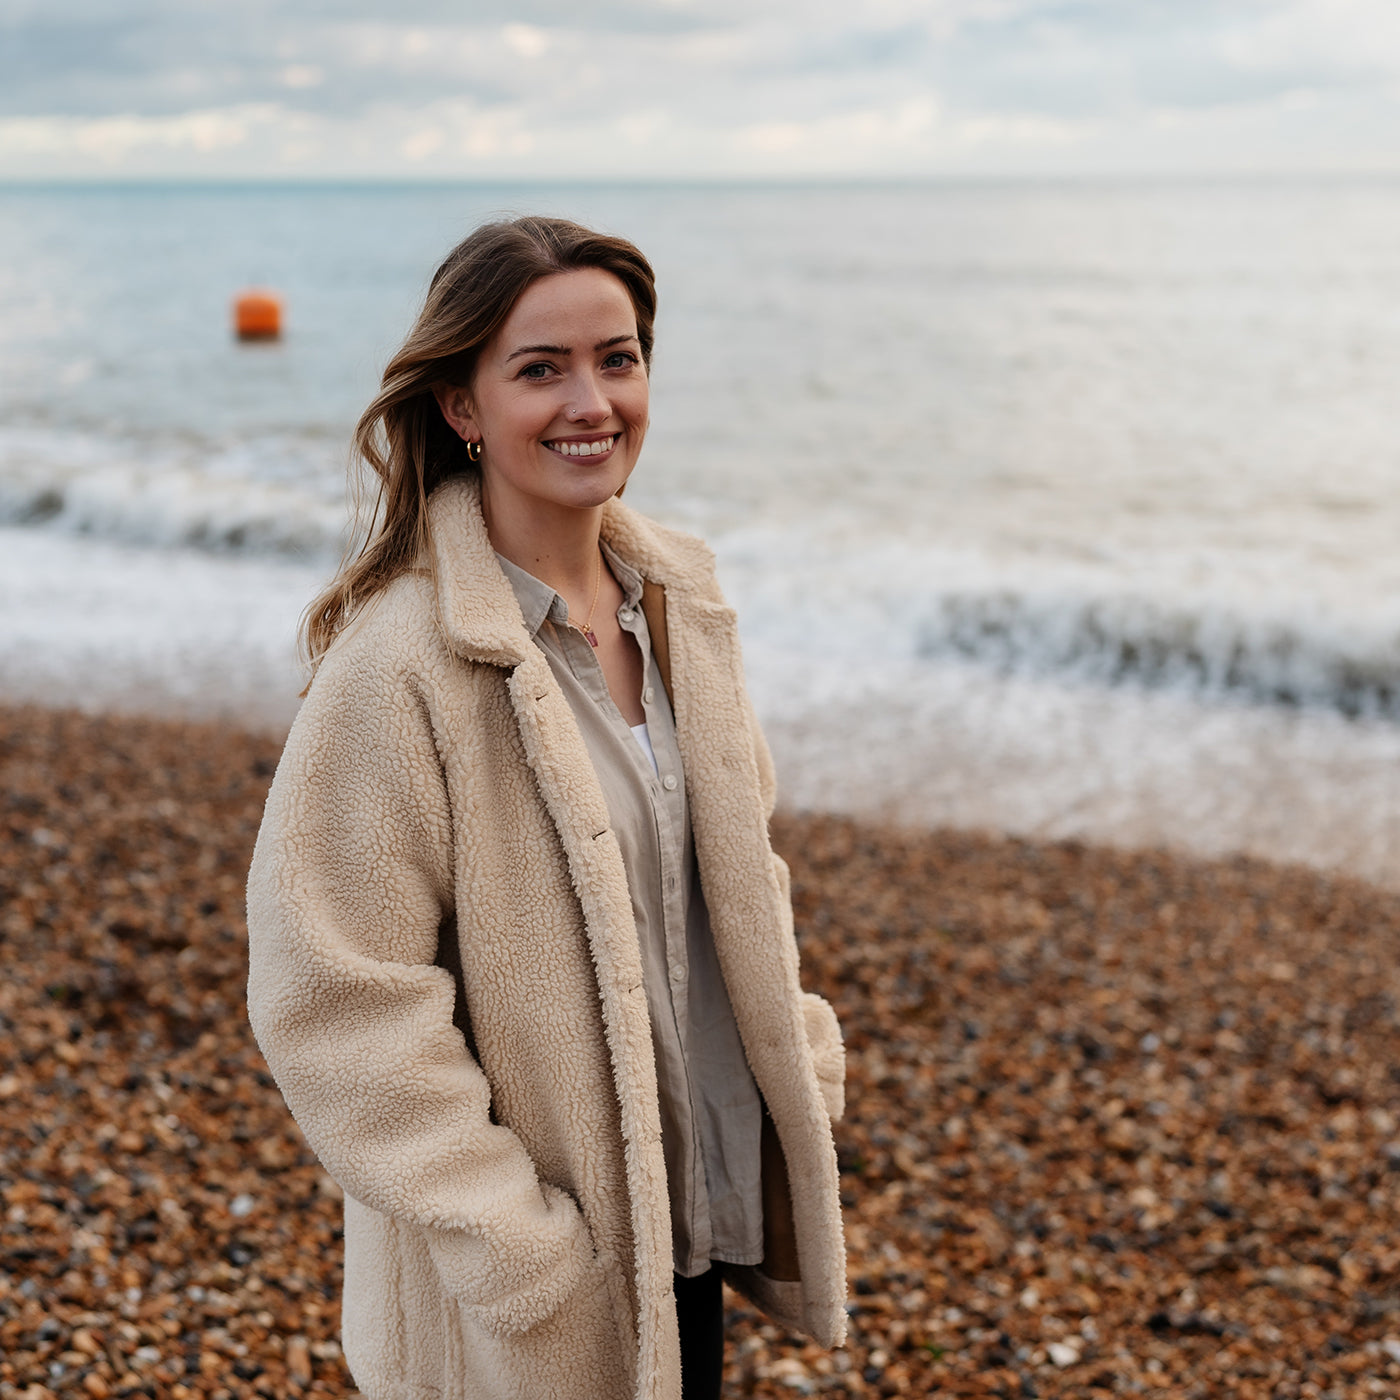 Rosie Clayden profile photo on Brighton beach